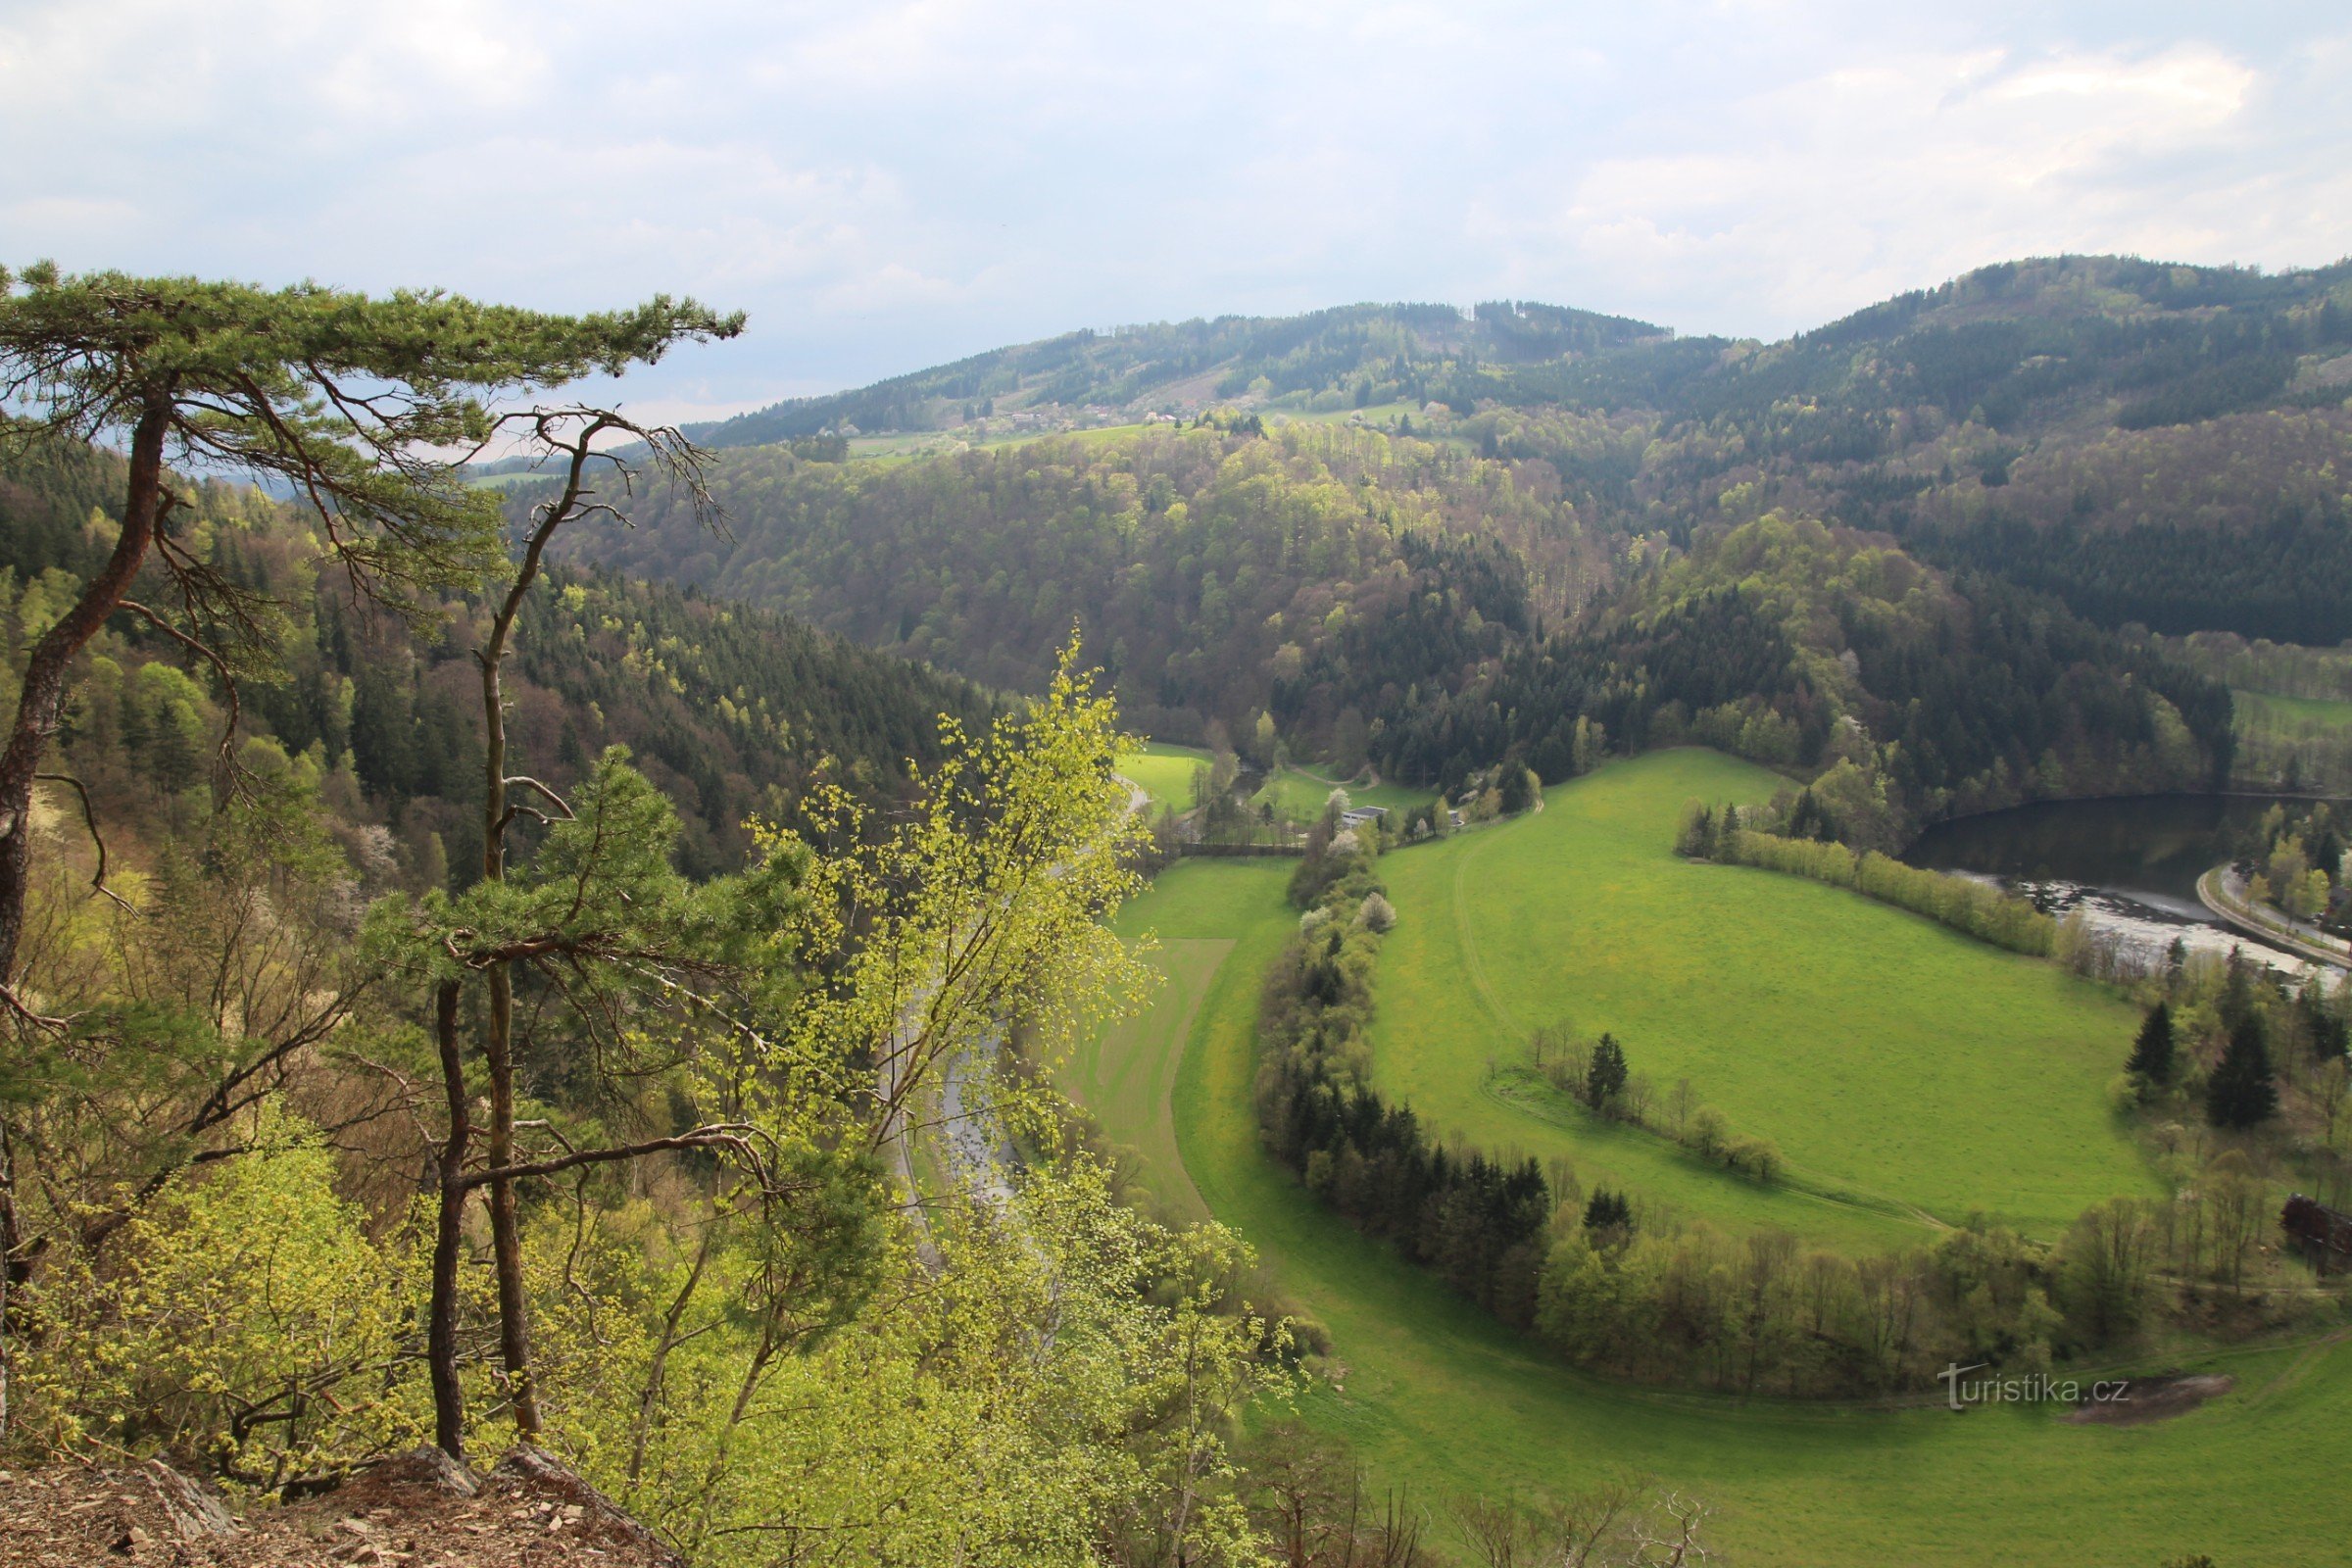 Widok na dno doliny, nad nią na horyzoncie na szczycie zalesionego grzbietu zamek Zubštejn